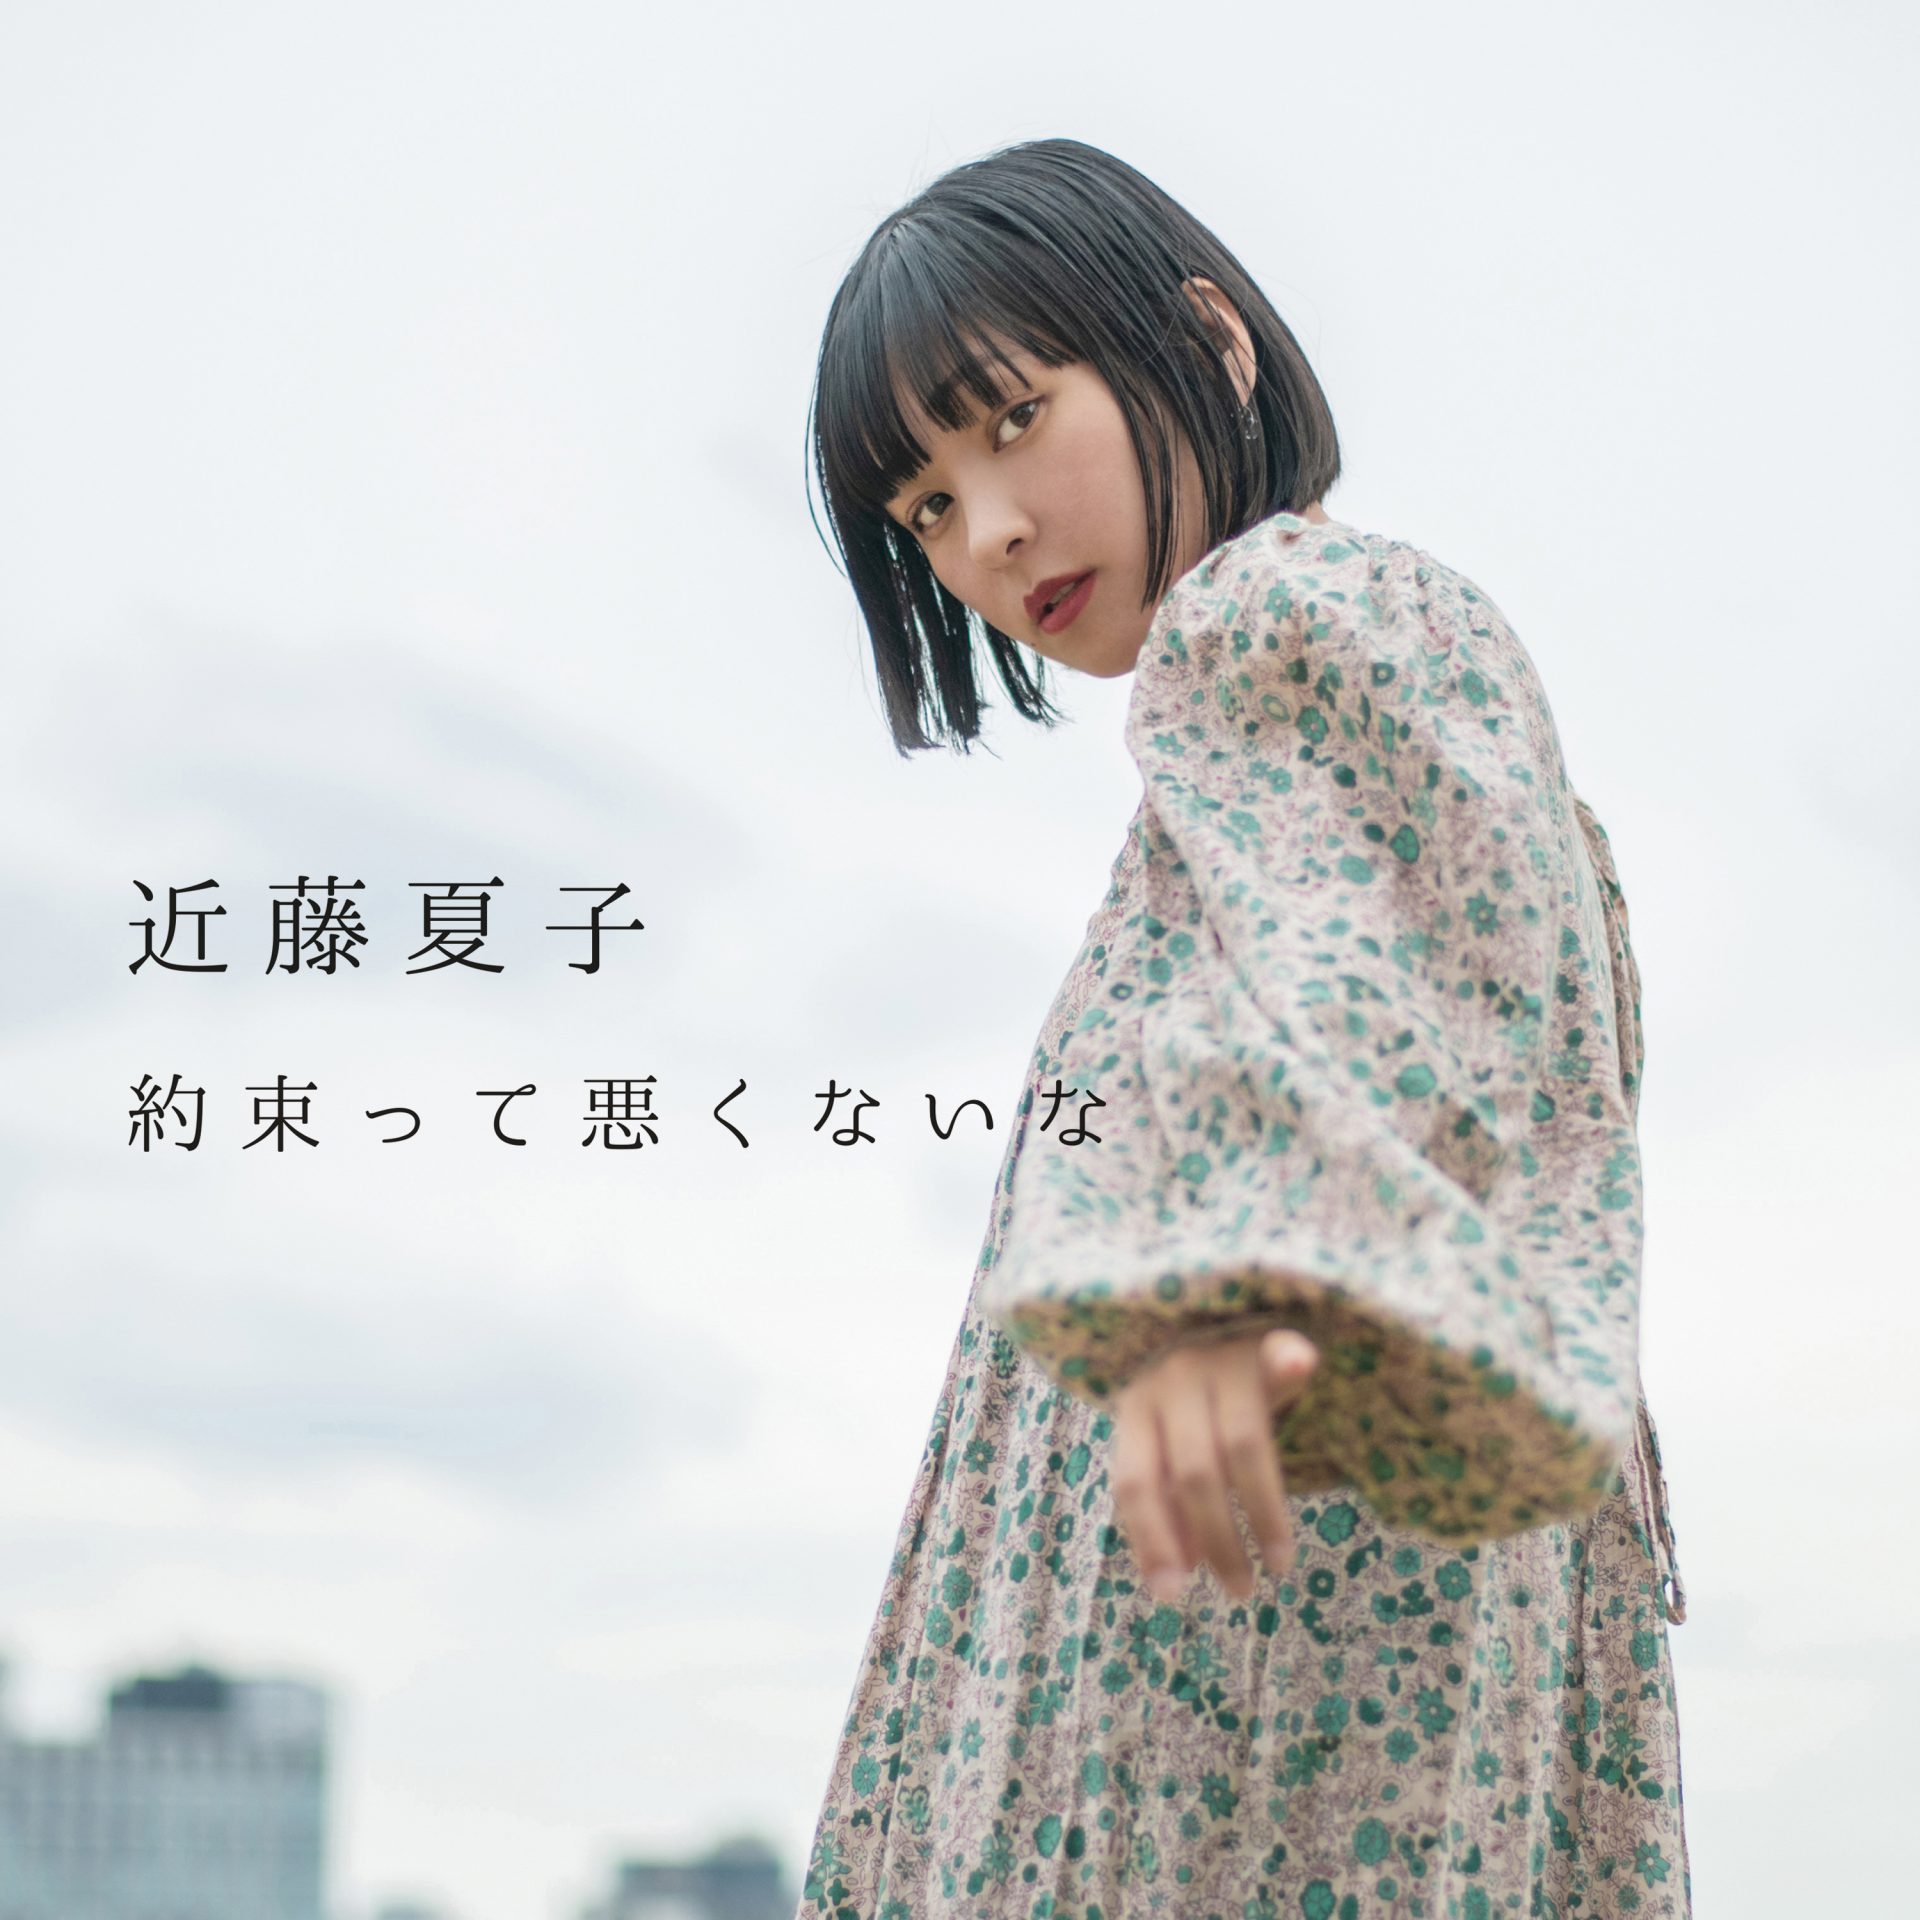 「自分を救うための歌」 シンガーソングライター近藤夏子の新曲 